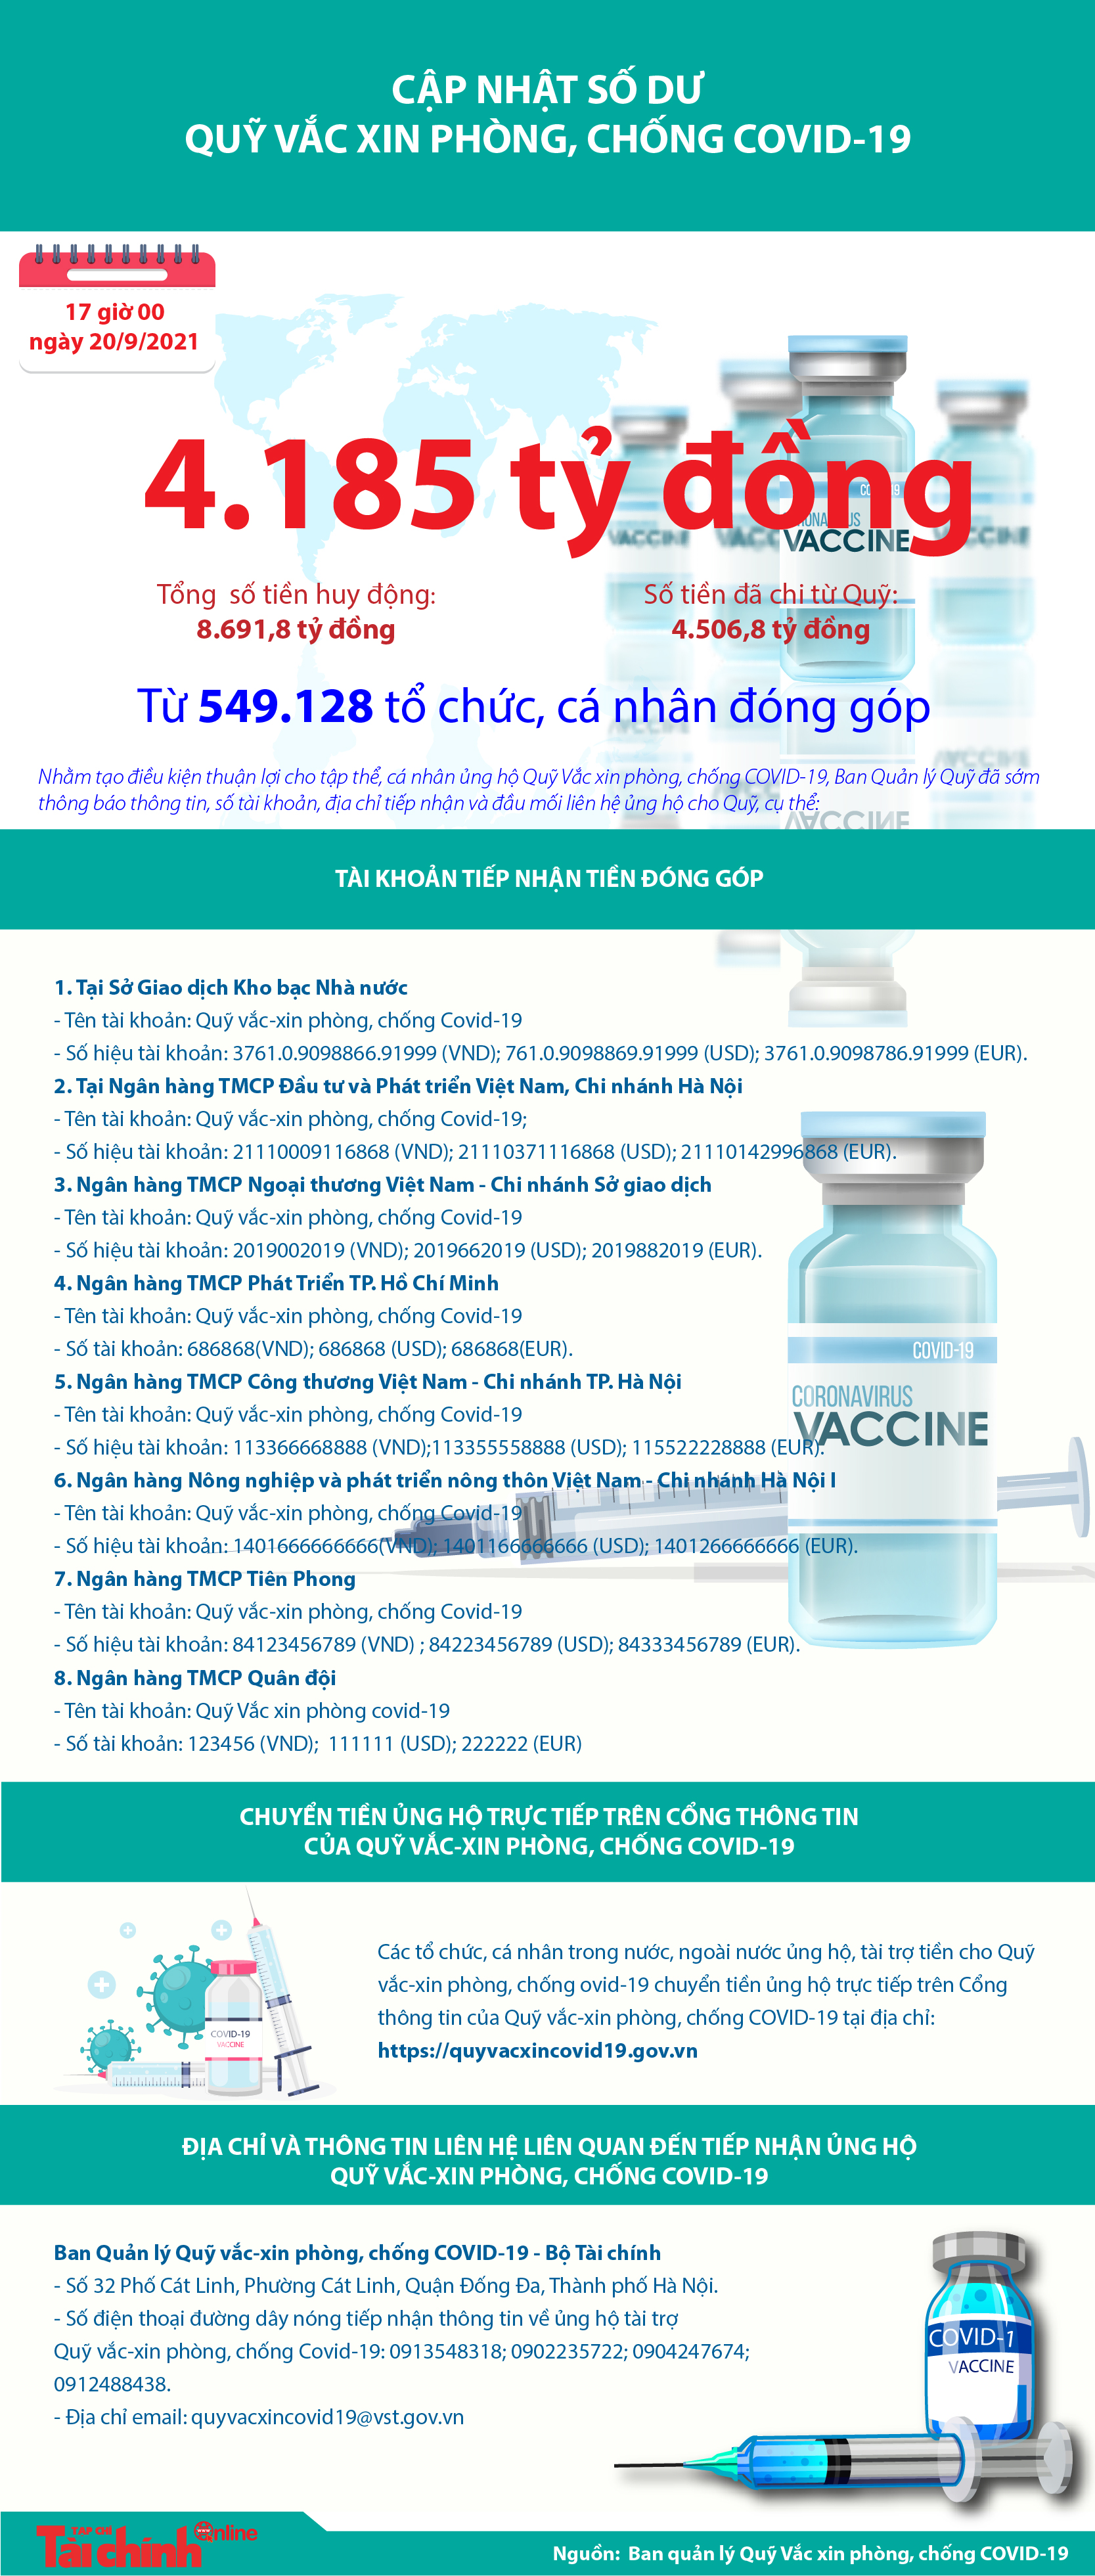 [Infographics] Quỹ Vắc xin phòng, chống COVID-19 còn dư 4.185 tỷ đồng - Ảnh 1